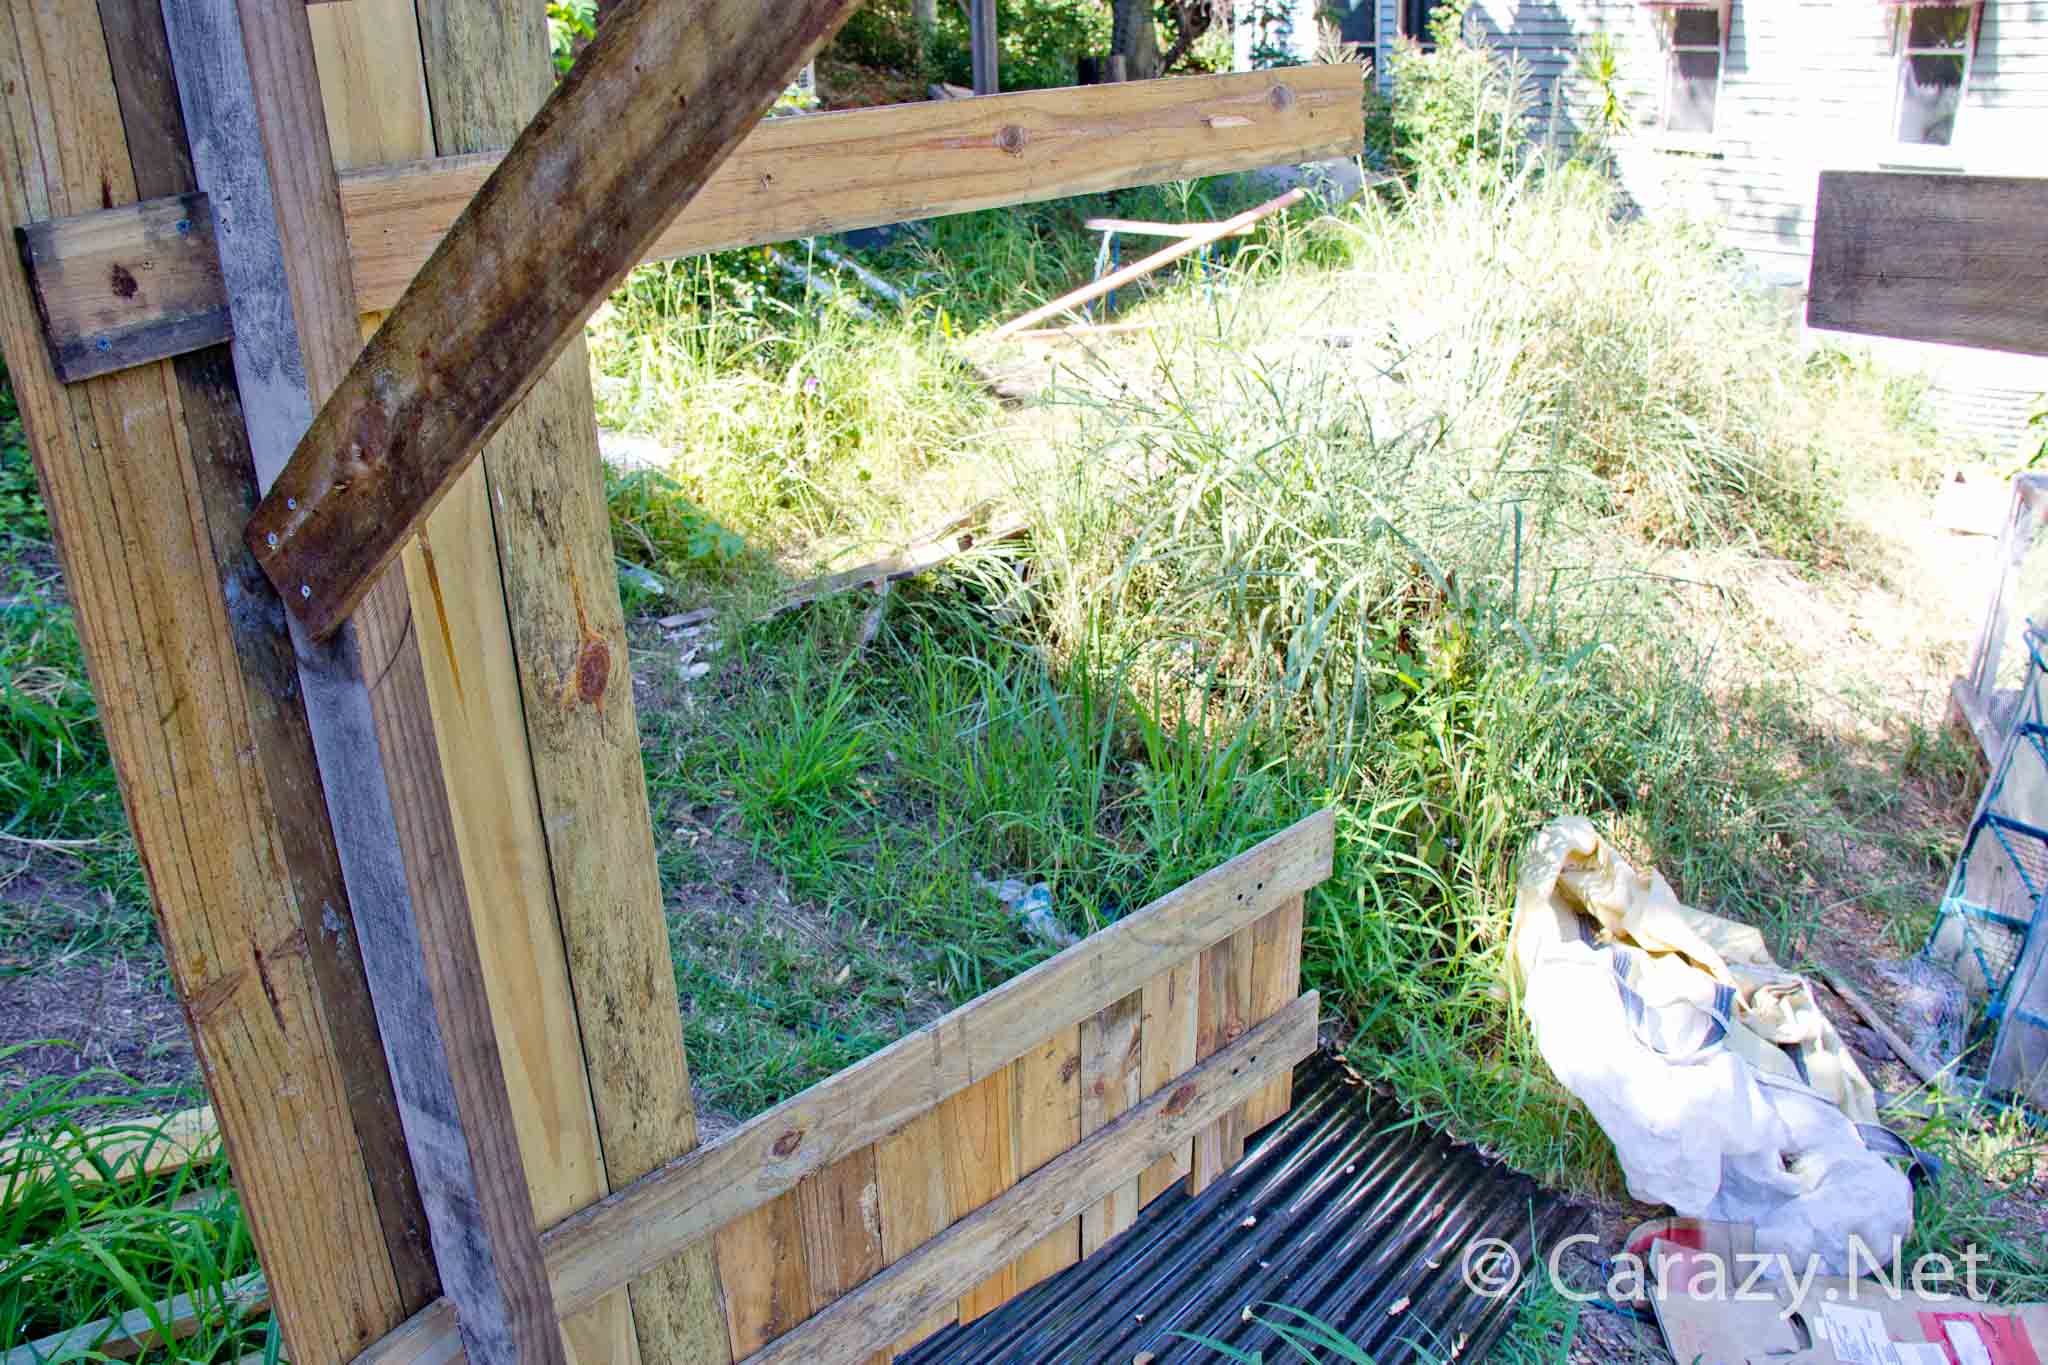 DIY Chicken coop build - Testing the doors